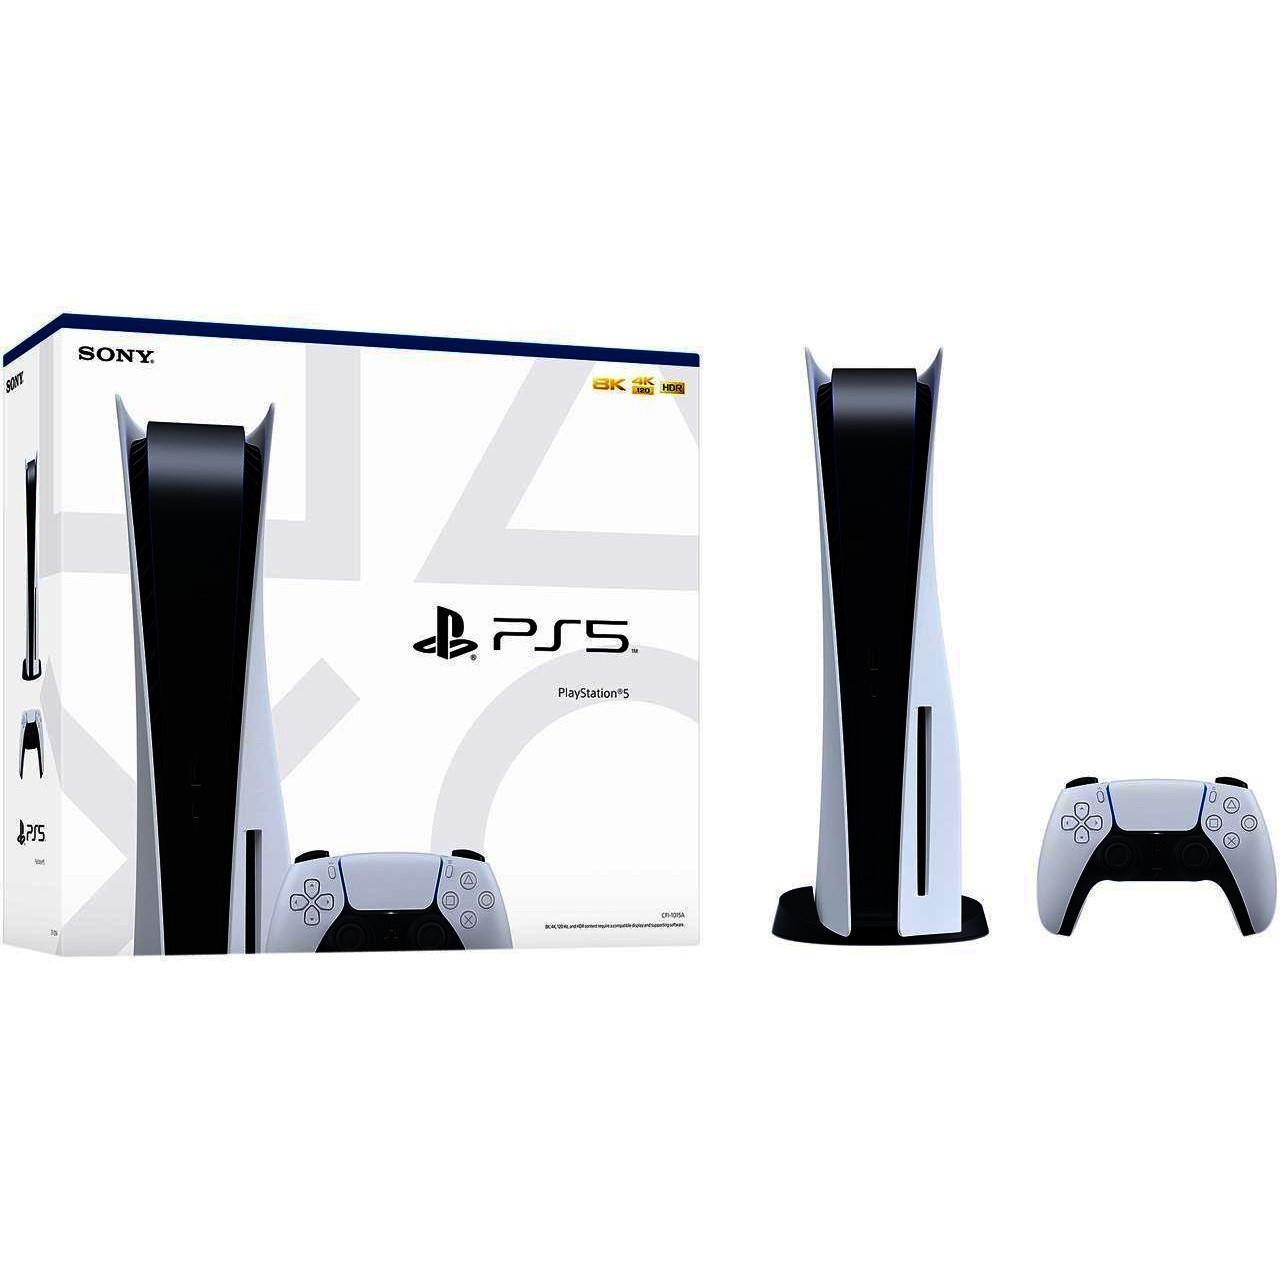 Borrow Sony Games Console (PlayStation 2)